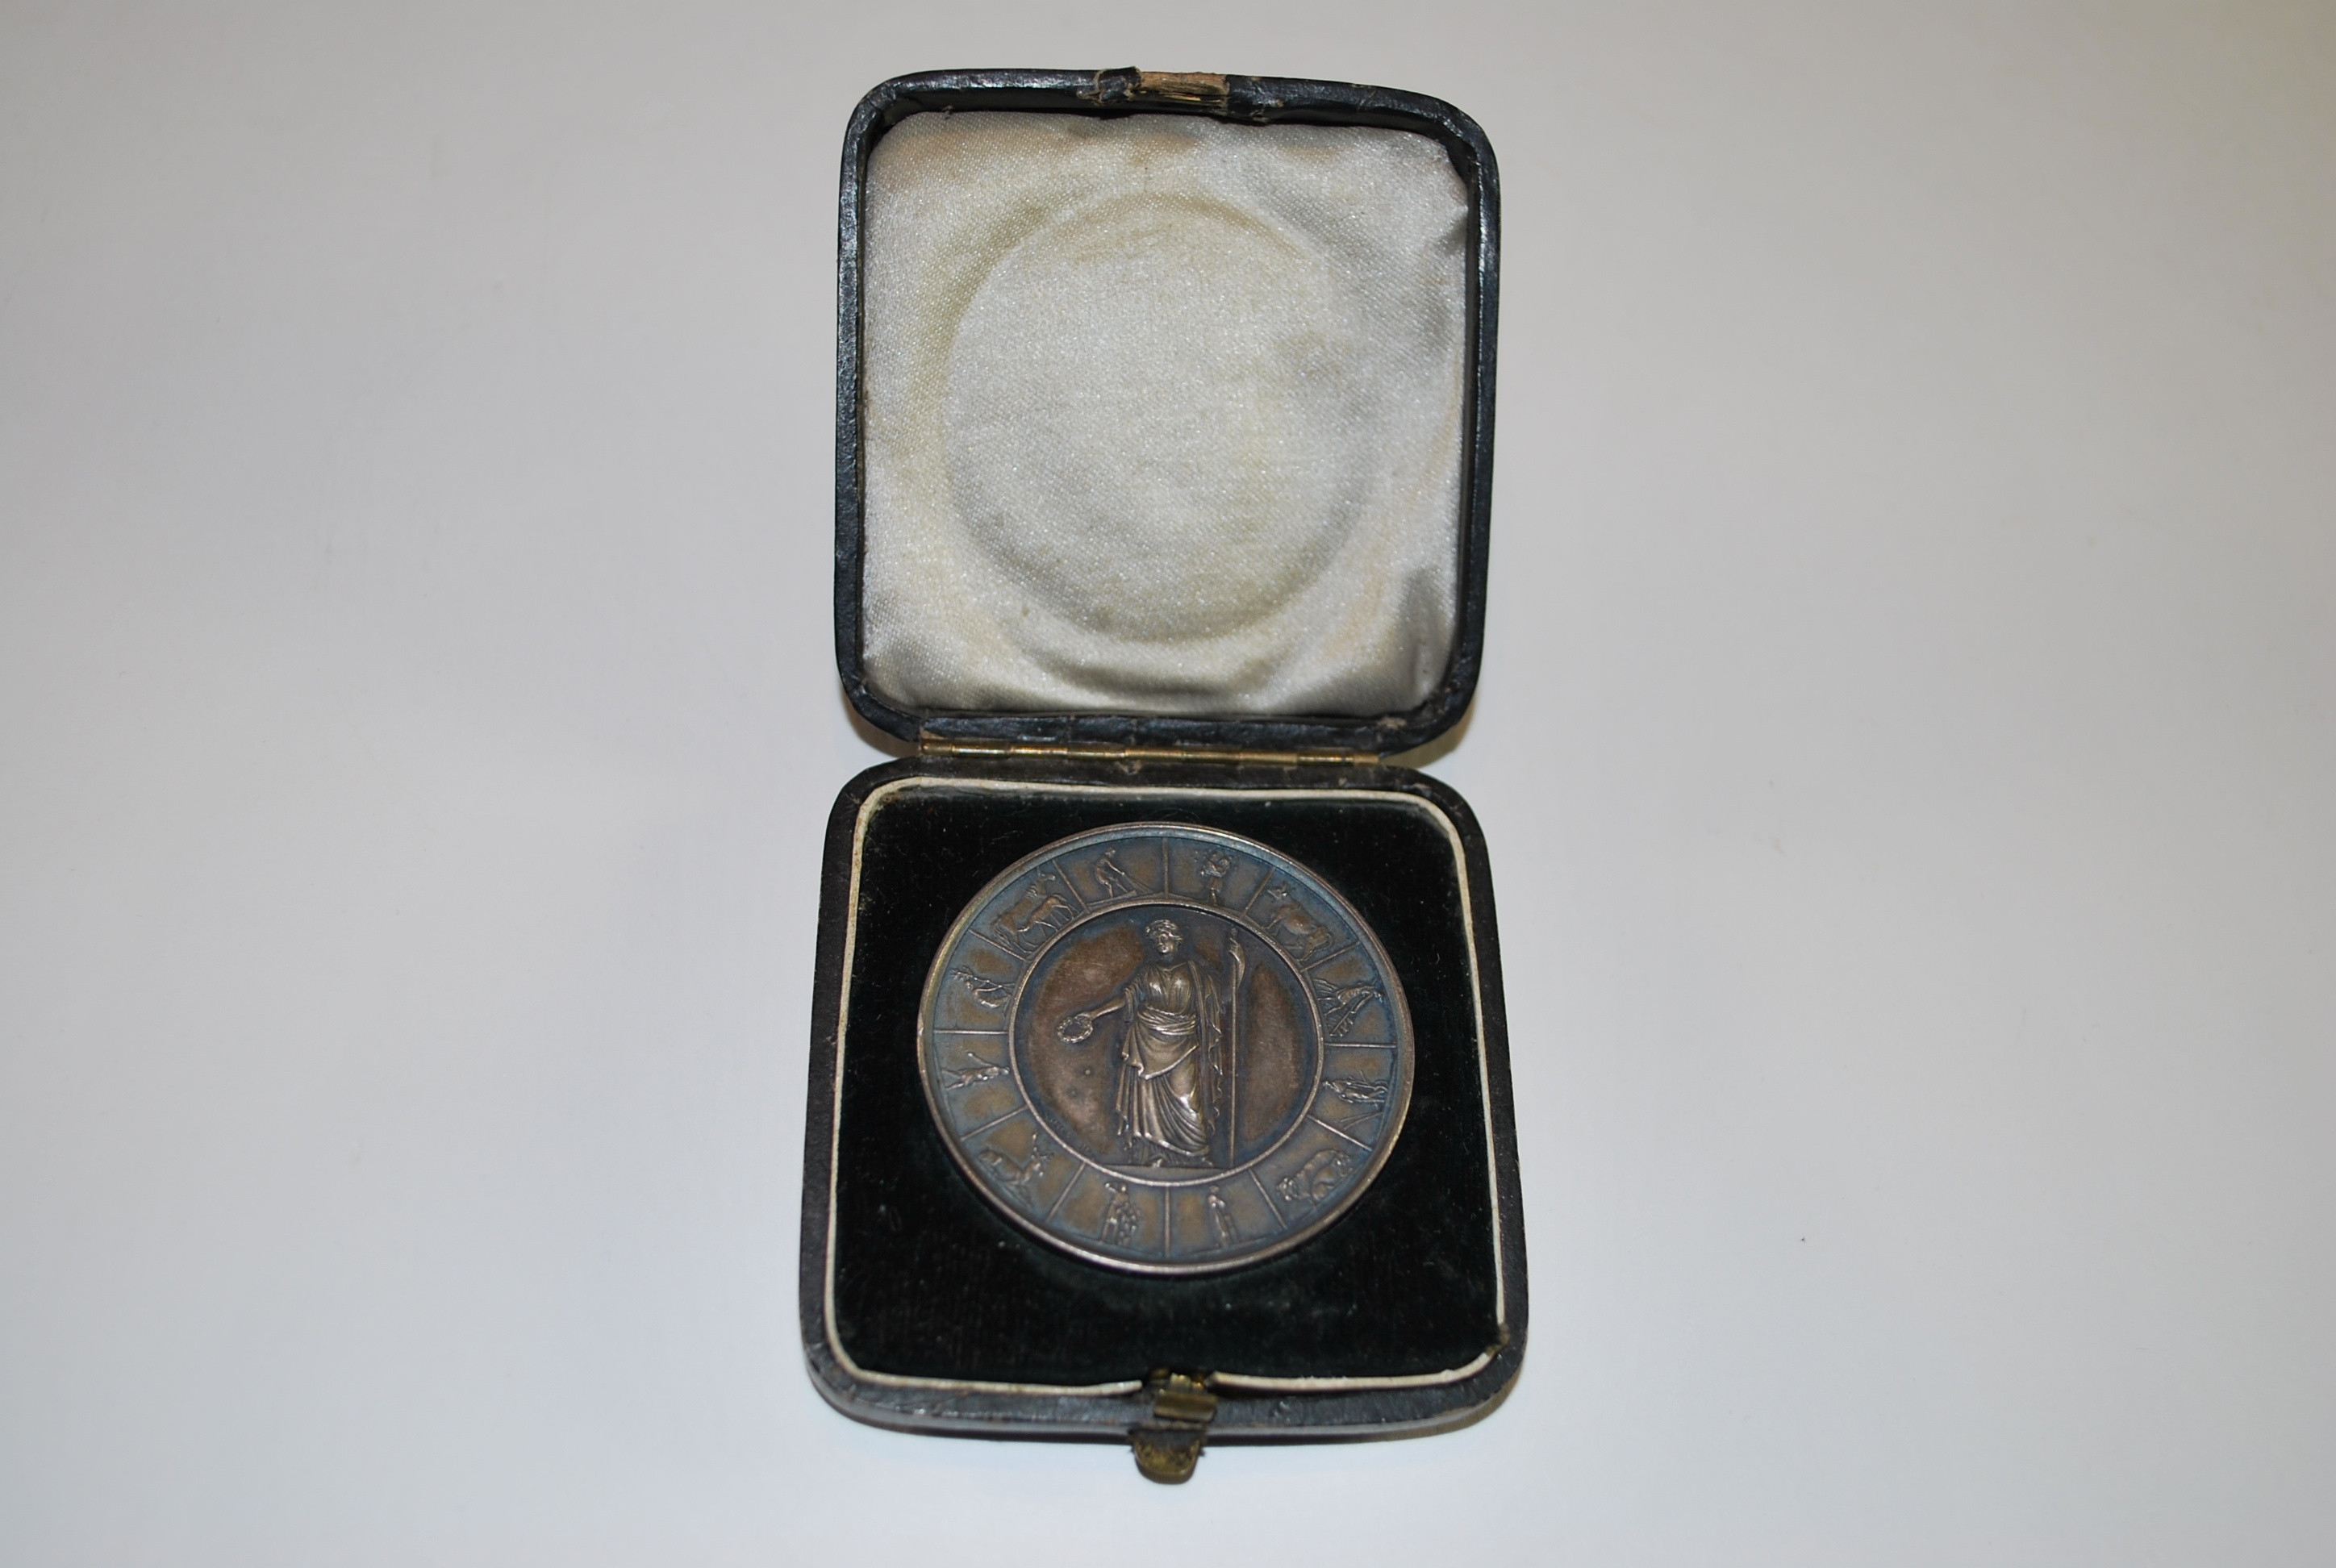 Staatspreis für landwirtschaftliche Leistungen in Silber (2.Stempel) im Etui (Kulturhistorisches Museum Schloss Merseburg CC BY-NC-SA)